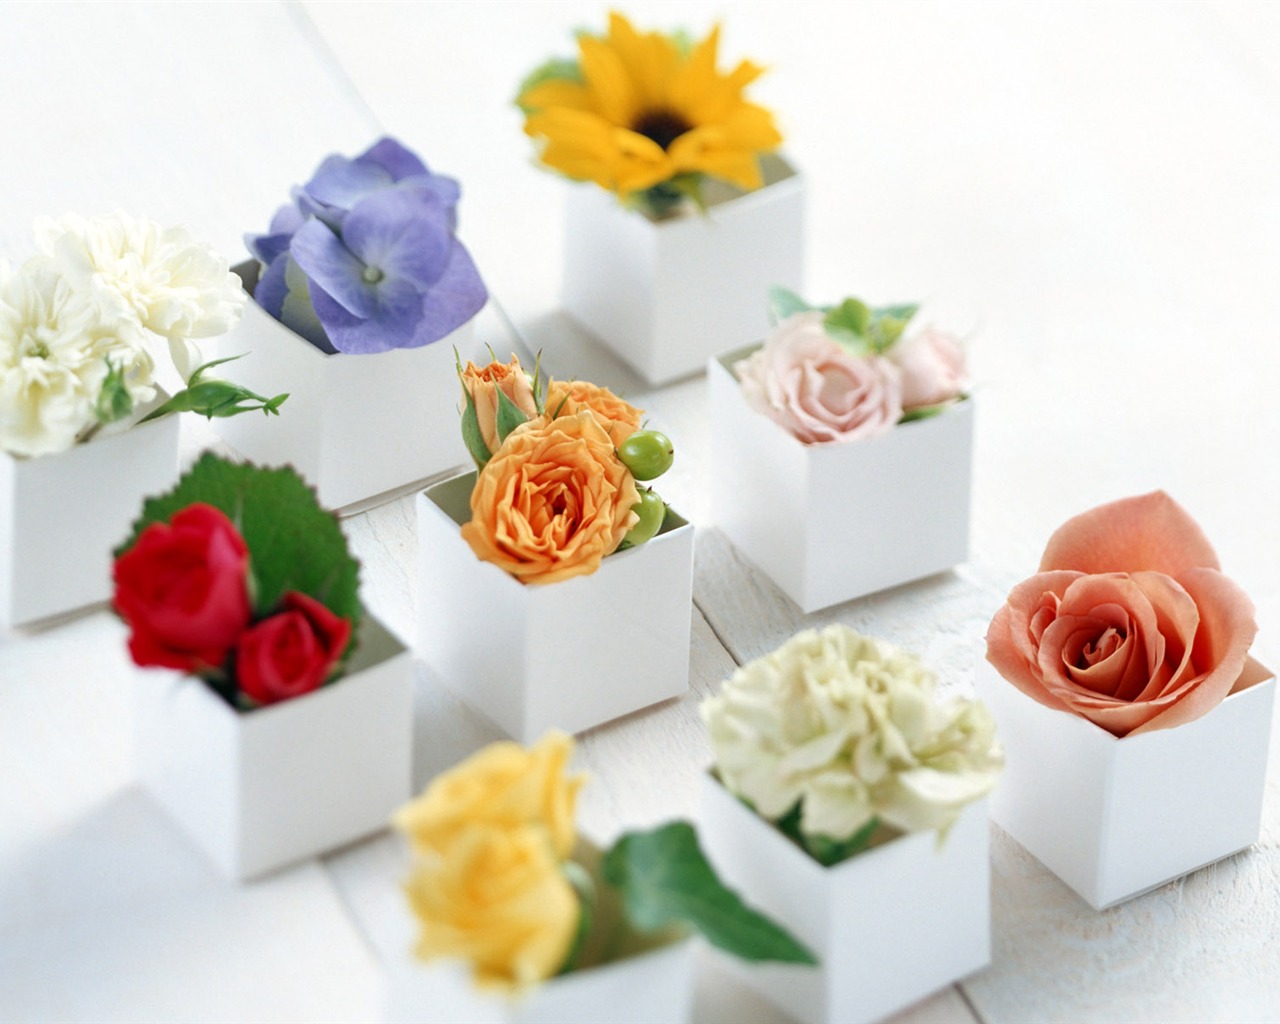 鲜花与礼物 壁纸(一)2 - 1280x1024